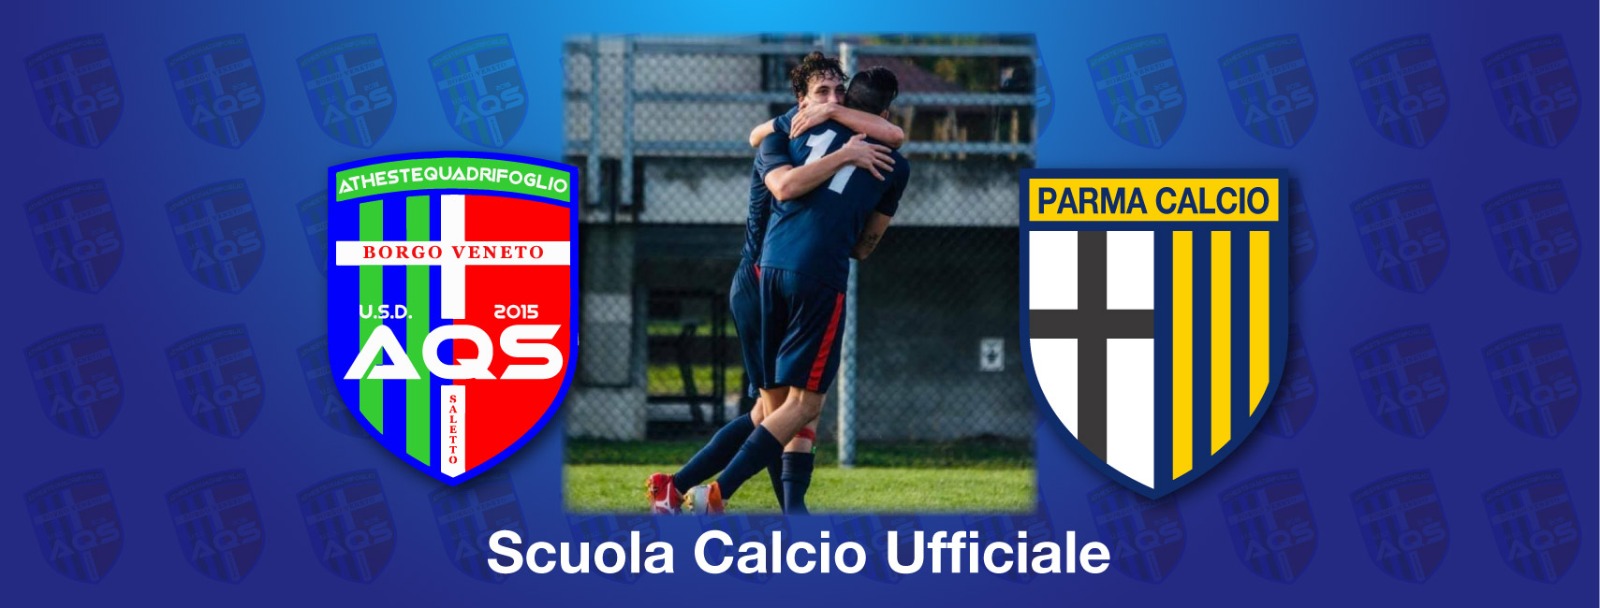 Scuola Calcio - Centro Tecnico Parma